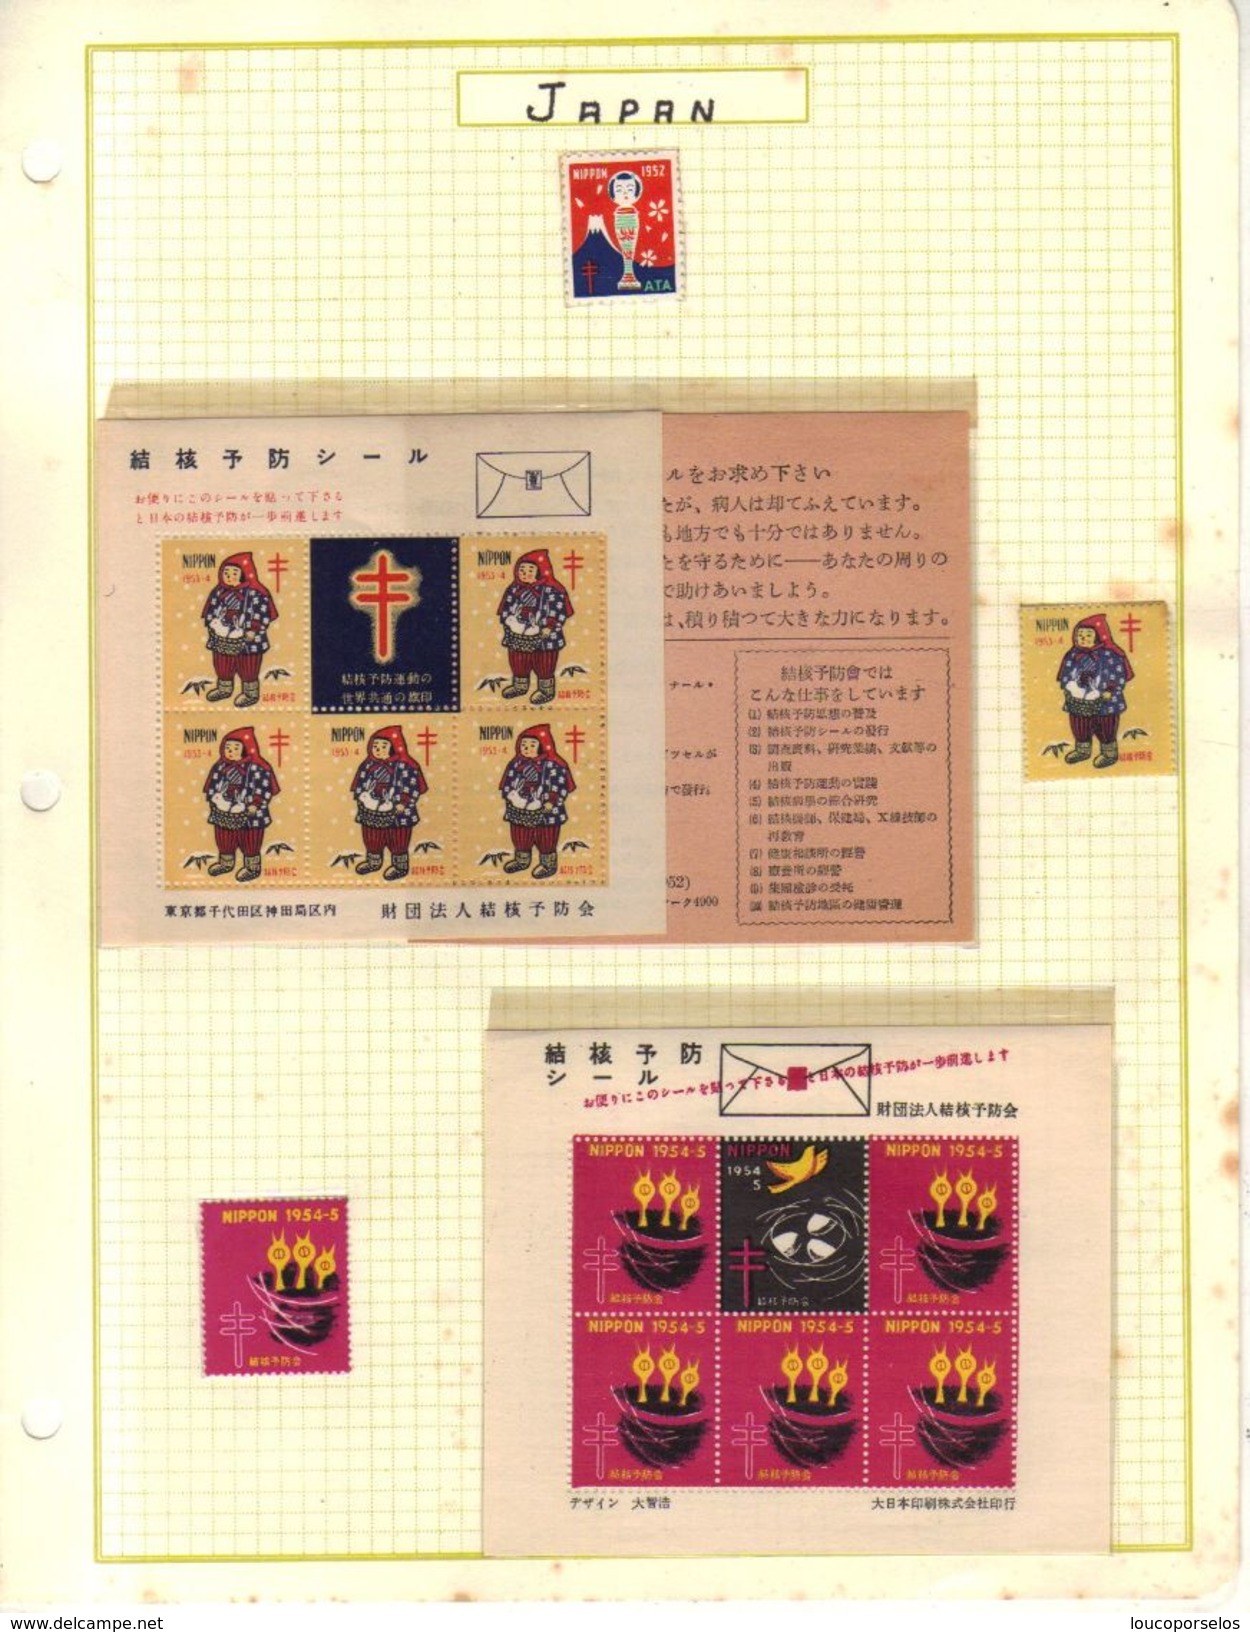 12706 Japão Grande coleção de selos, cadernetas, blocos de Tuberculose Linda e Rara em 12 paginas.